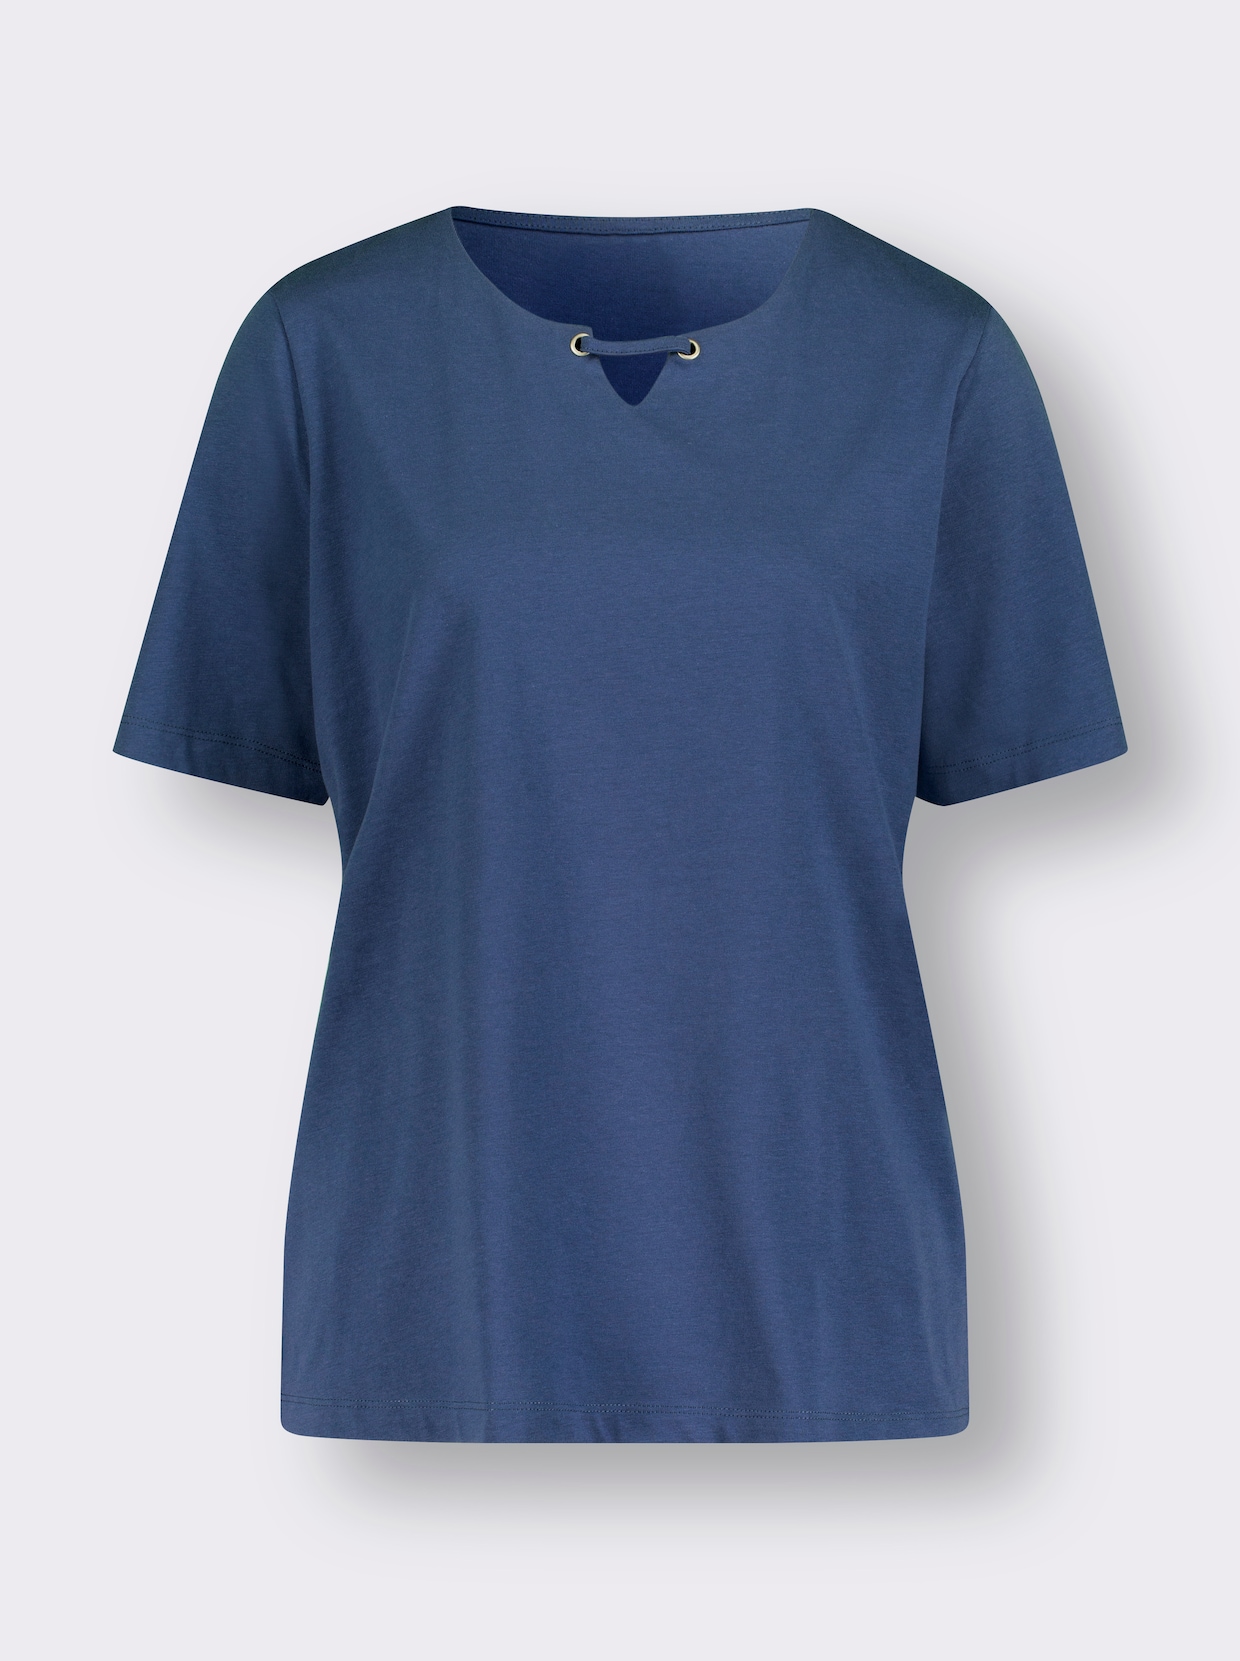 Tričko s krátkým rukávem - džínová modrá